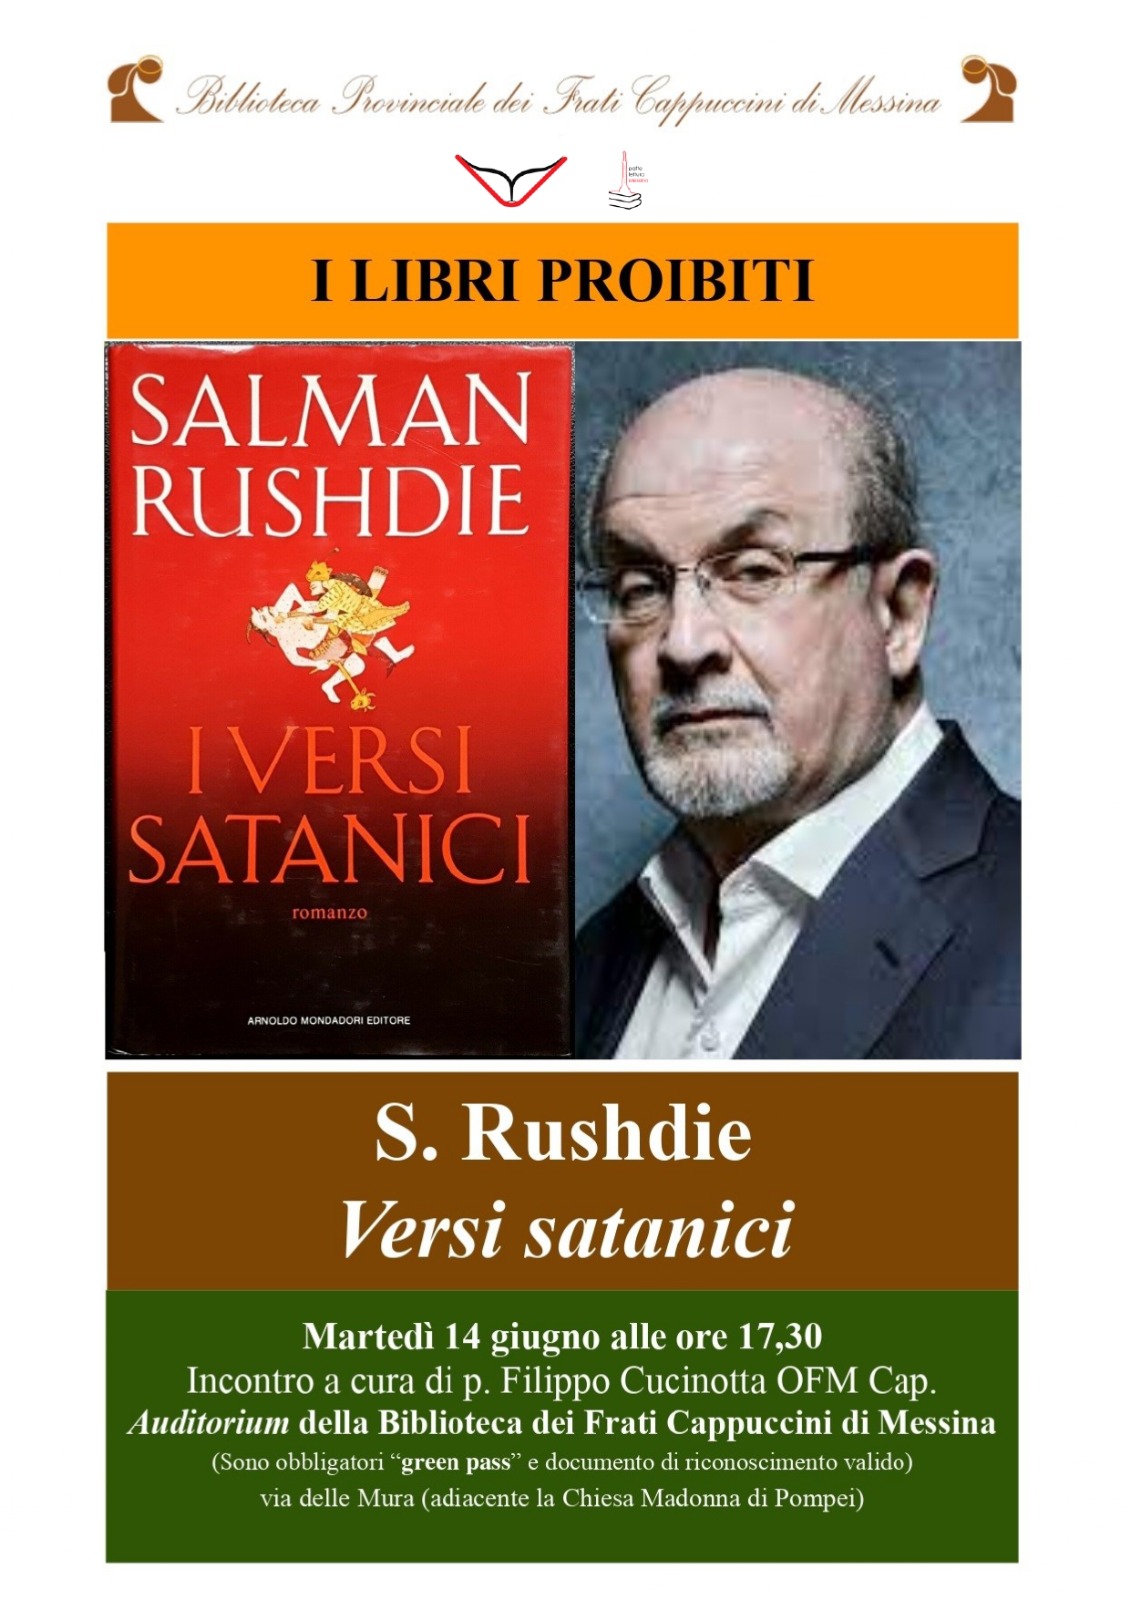 Nono incontro S. Rushdie Versi satanici